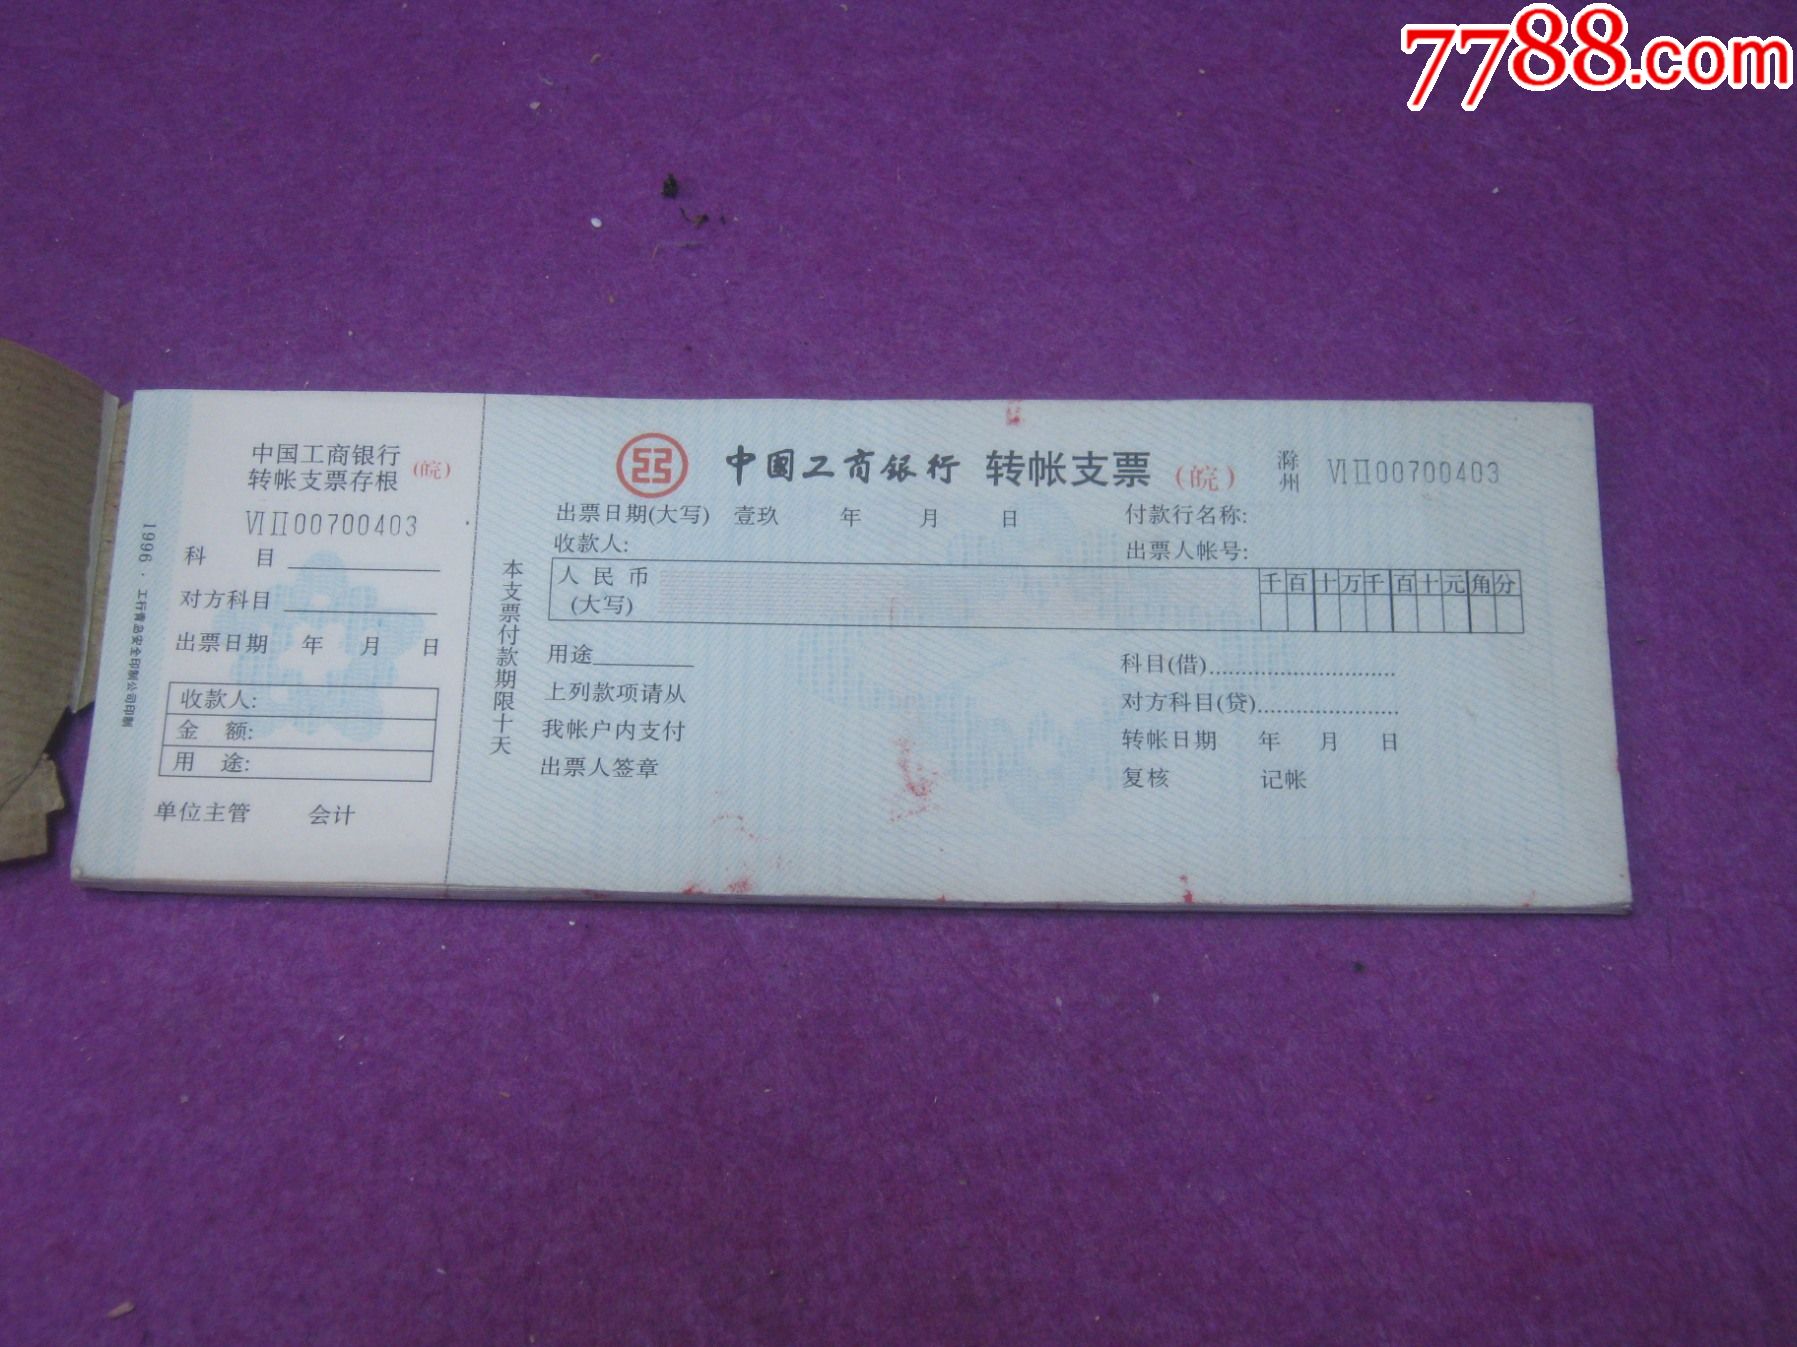 中国工商银行支票模板图片